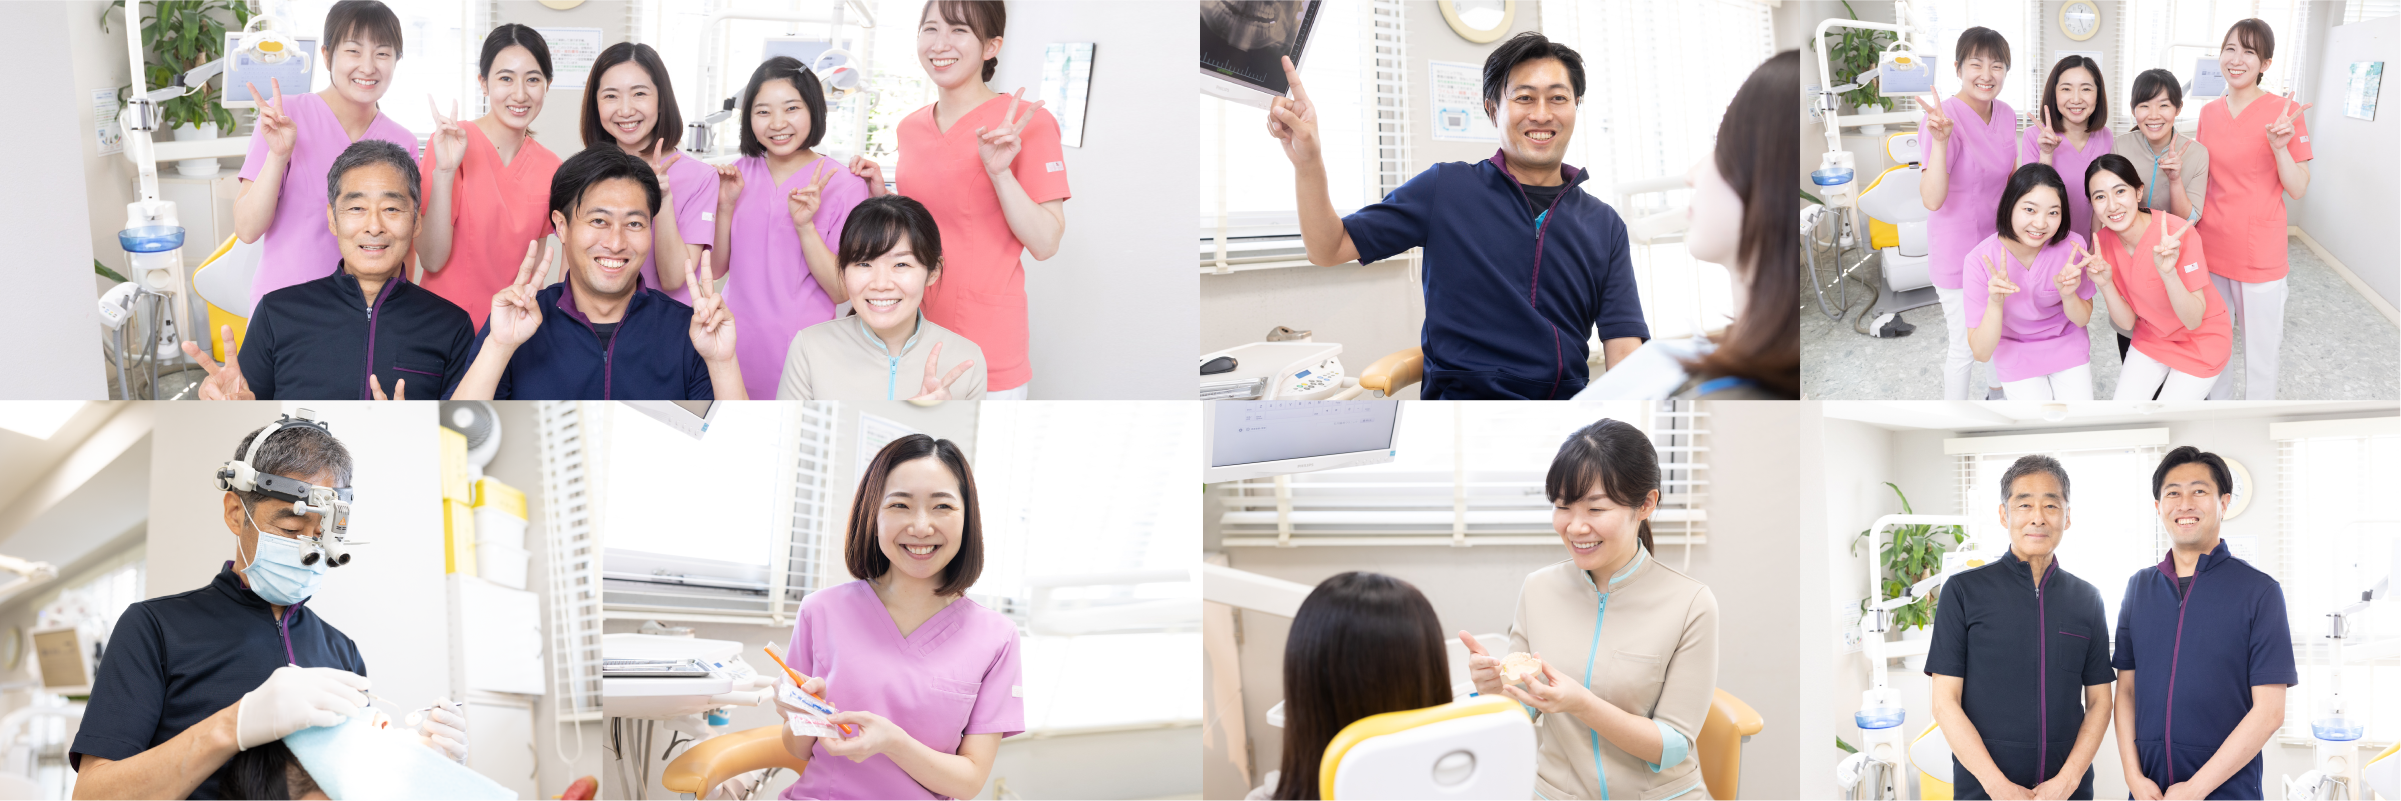 横浜市の歯医者 | 石川歯科クリニック 診療方針